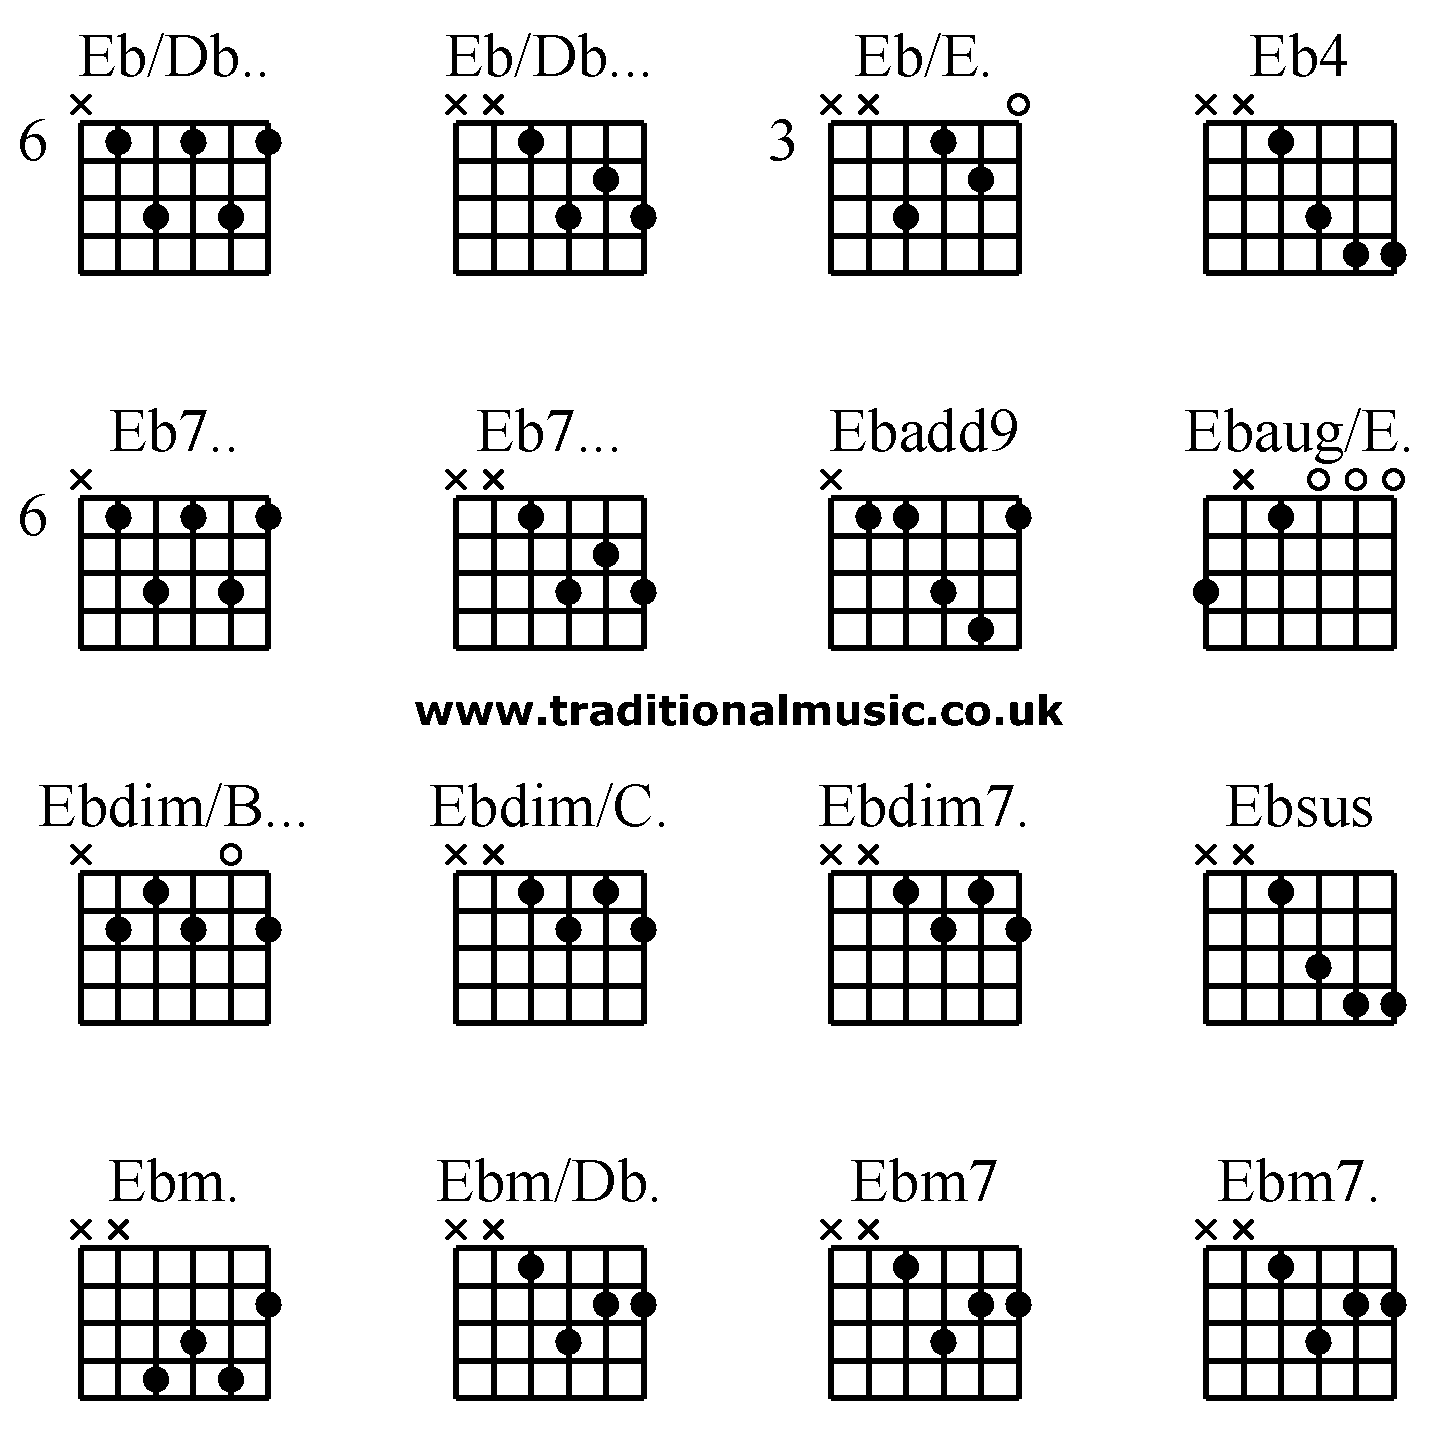 Advanced guitar chords:Eb/Db.. Eb/Db... Eb/E. Eb4 Eb7.. Eb7... Ebadd9 Ebaug/E. Ebdim/B... Ebdim/C. Ebdim7. Ebsus Ebm. Ebm/Db. Ebm7 Ebm7. 